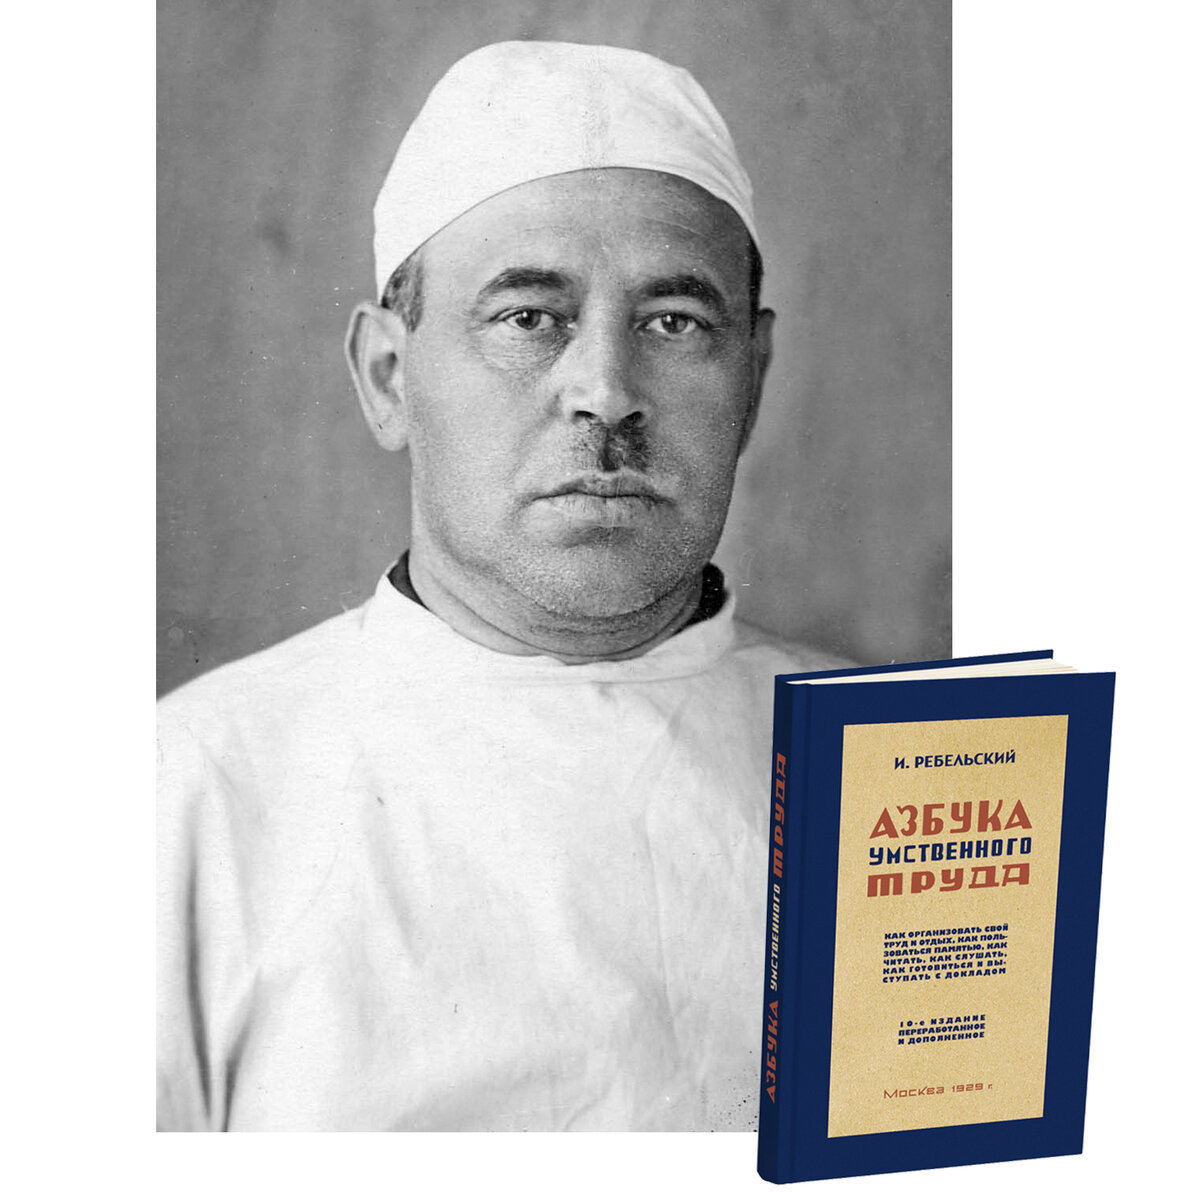 Товарищи, приветствуем! Пару лет назад проект «Сталинский букварь» переиздал книгу «Азбука умственного труда» (автор И.В. Ребельский, 1929 г.).